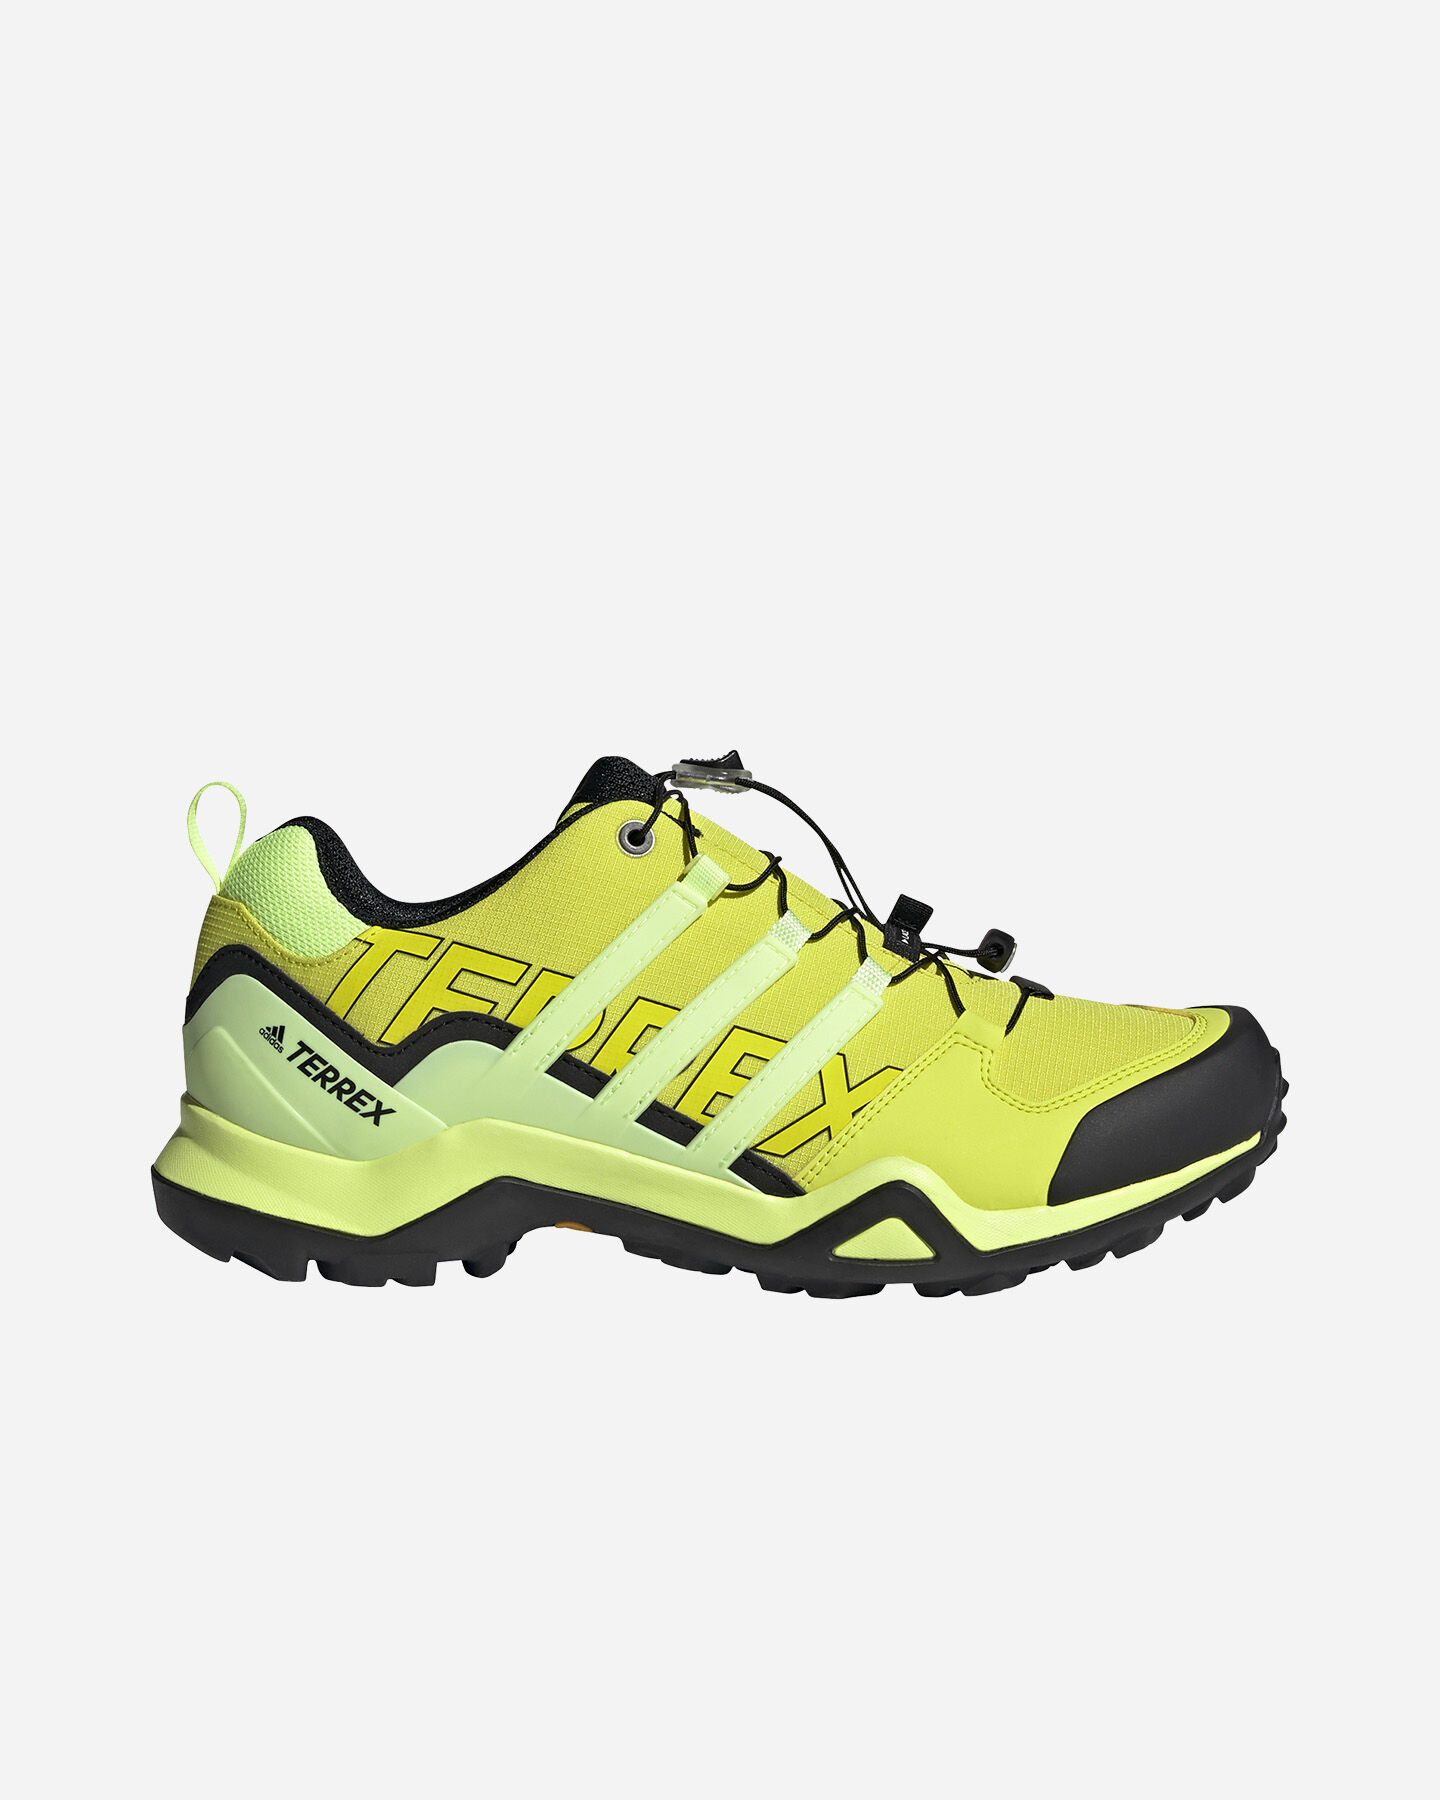 adidas Terrex: scarpe outdoor per trekking, trail running ... وضعيات الجماع